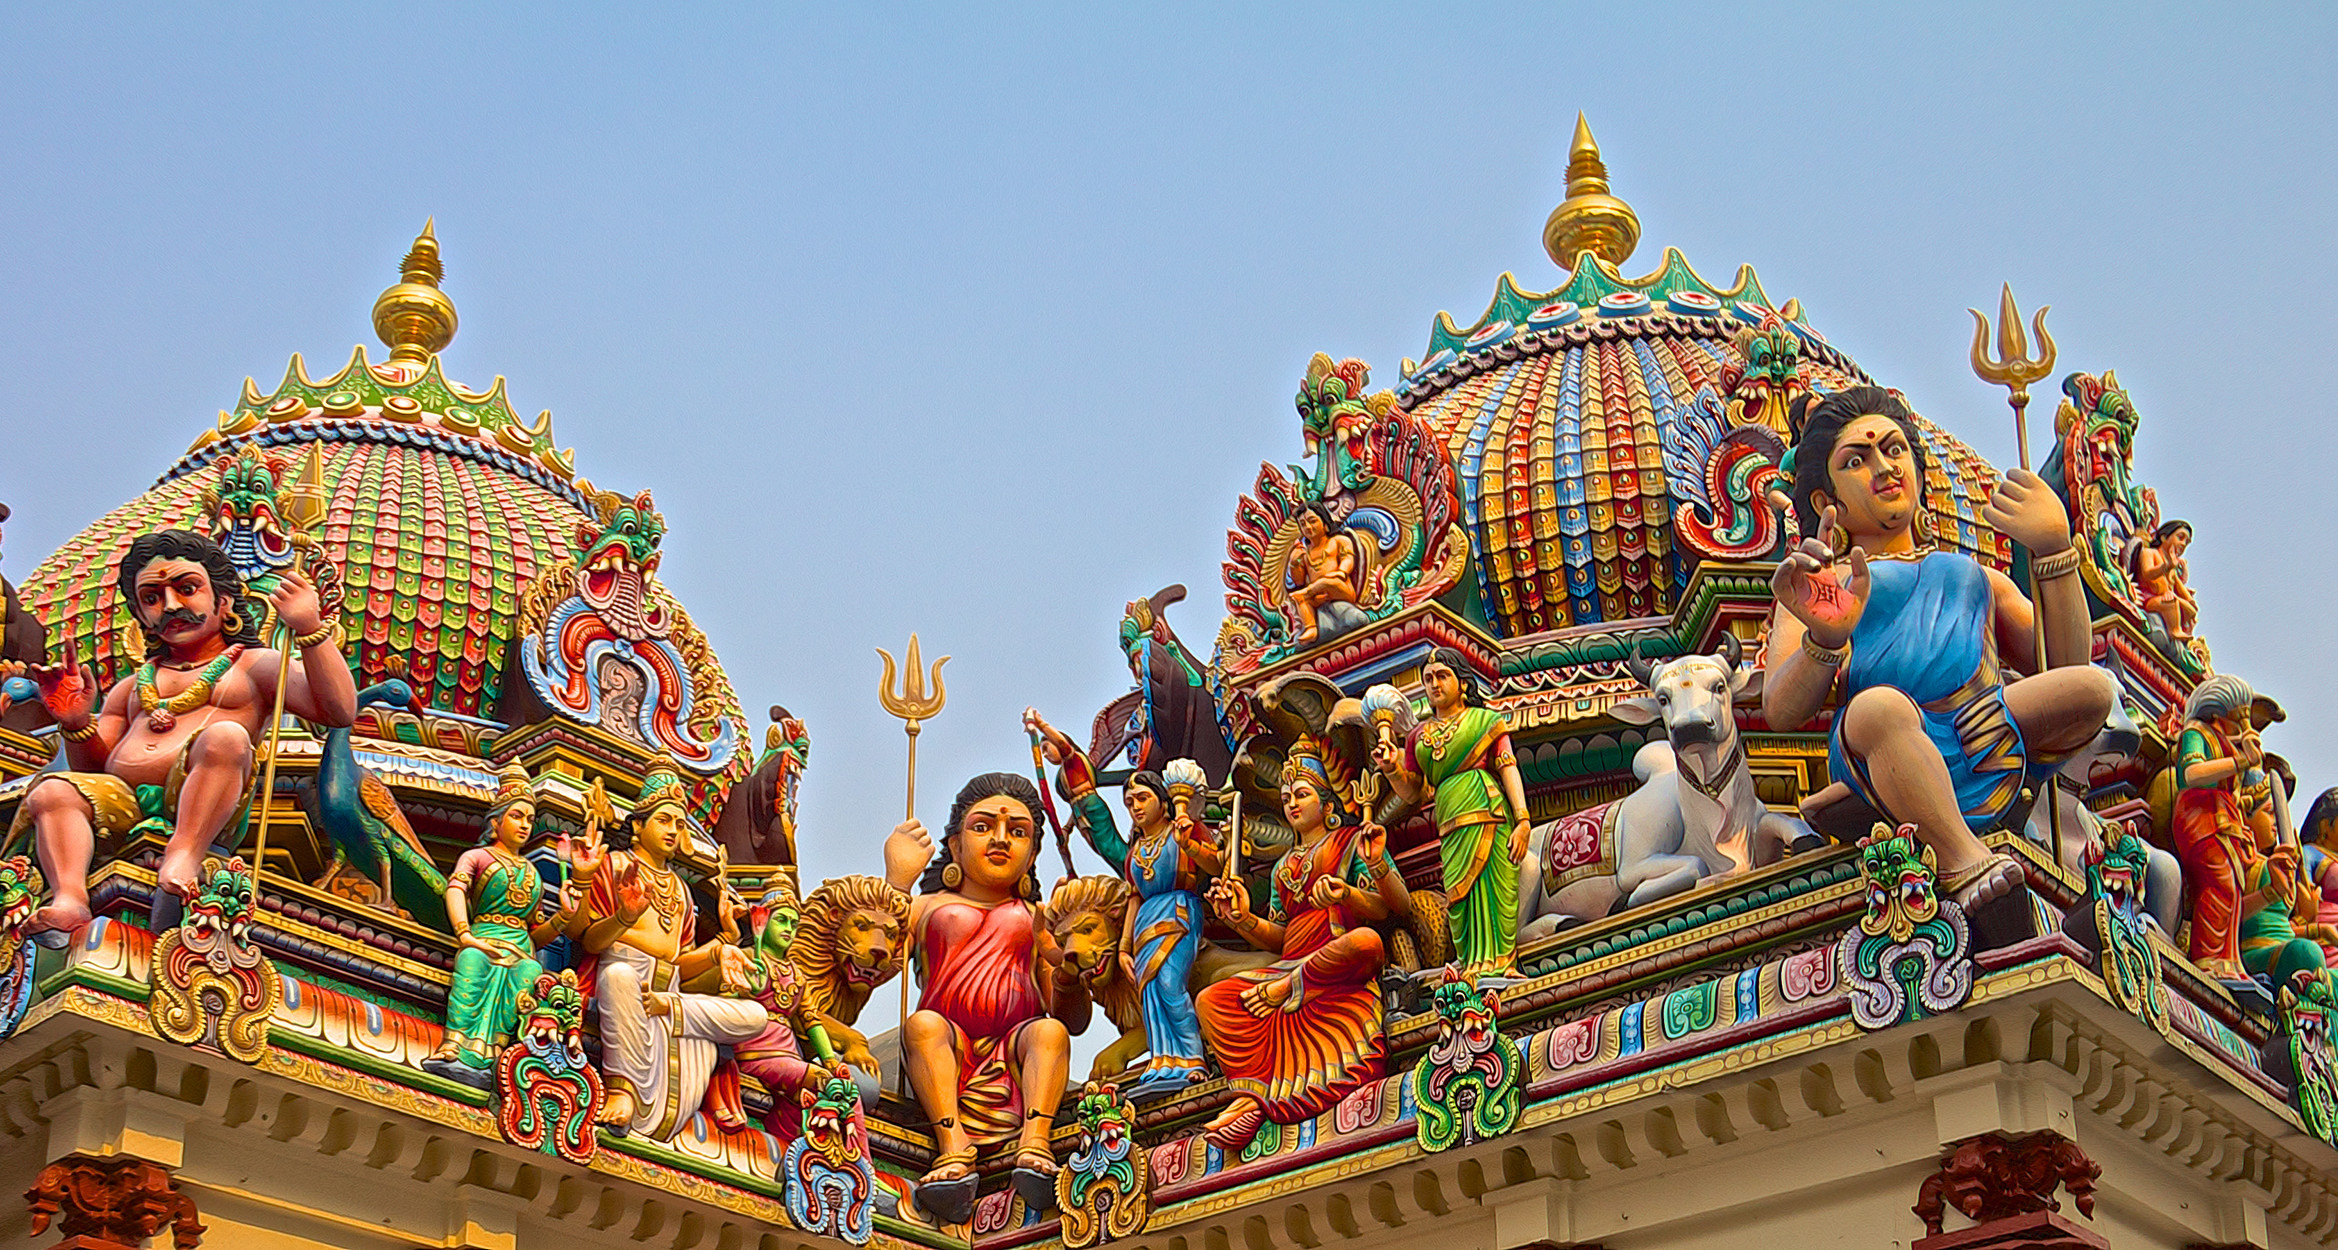 Đền thờ Đạo Hindu tại Ấn Độ - Kinh nghiệm du lịch nước ngoài